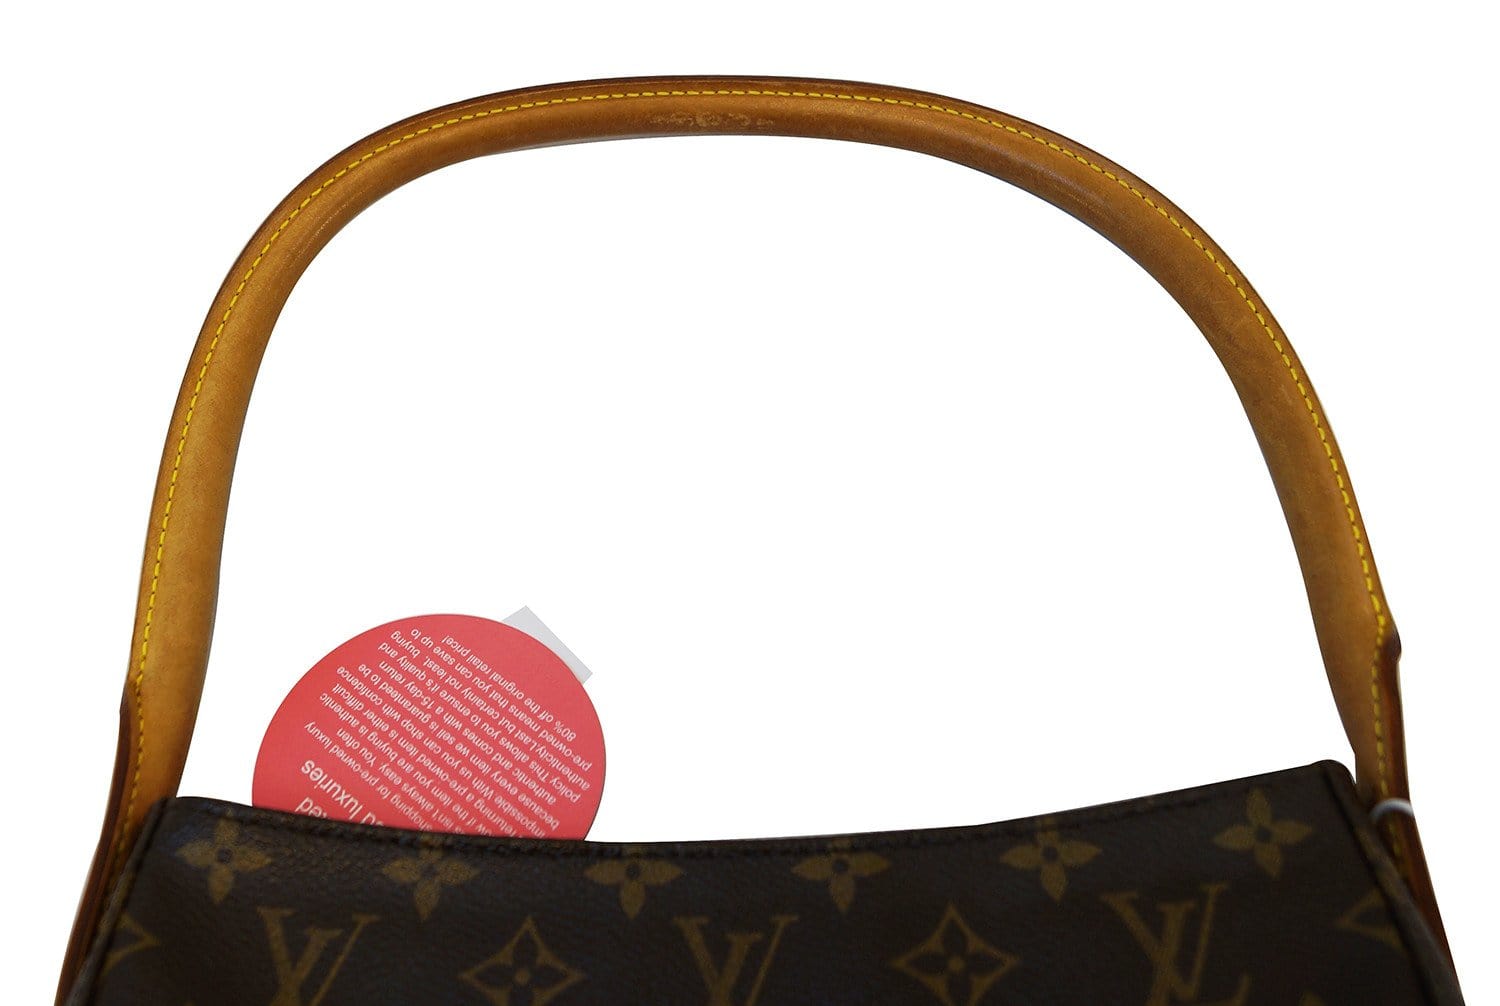 Louis Vuitton Pre-loved Monogram Looping Gm